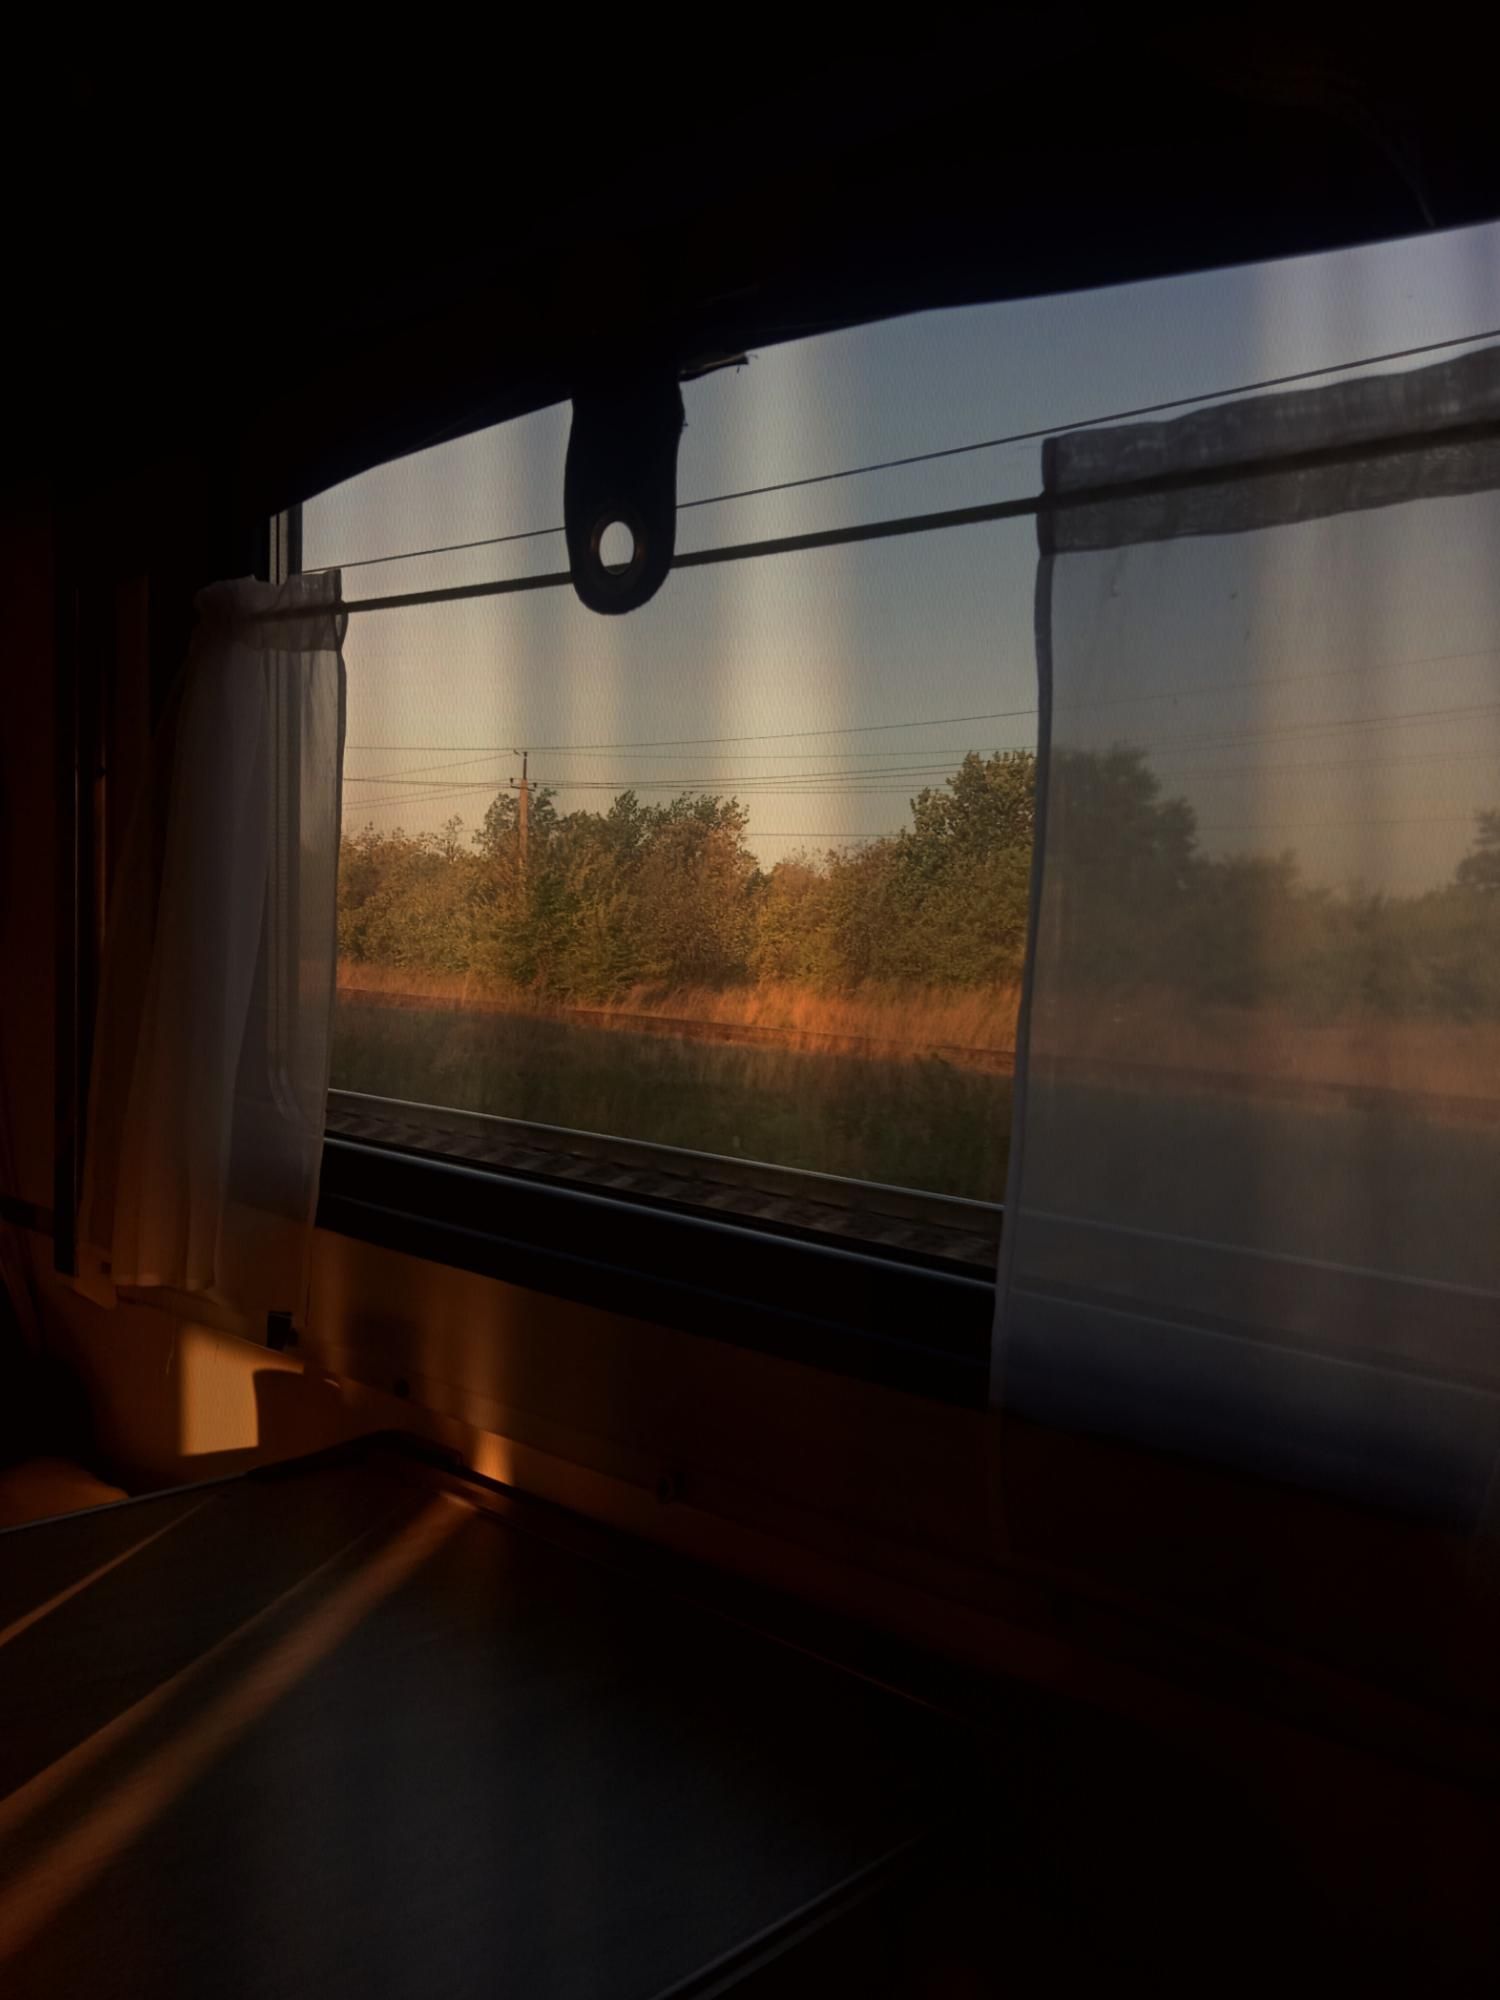 Вид из окна поезда